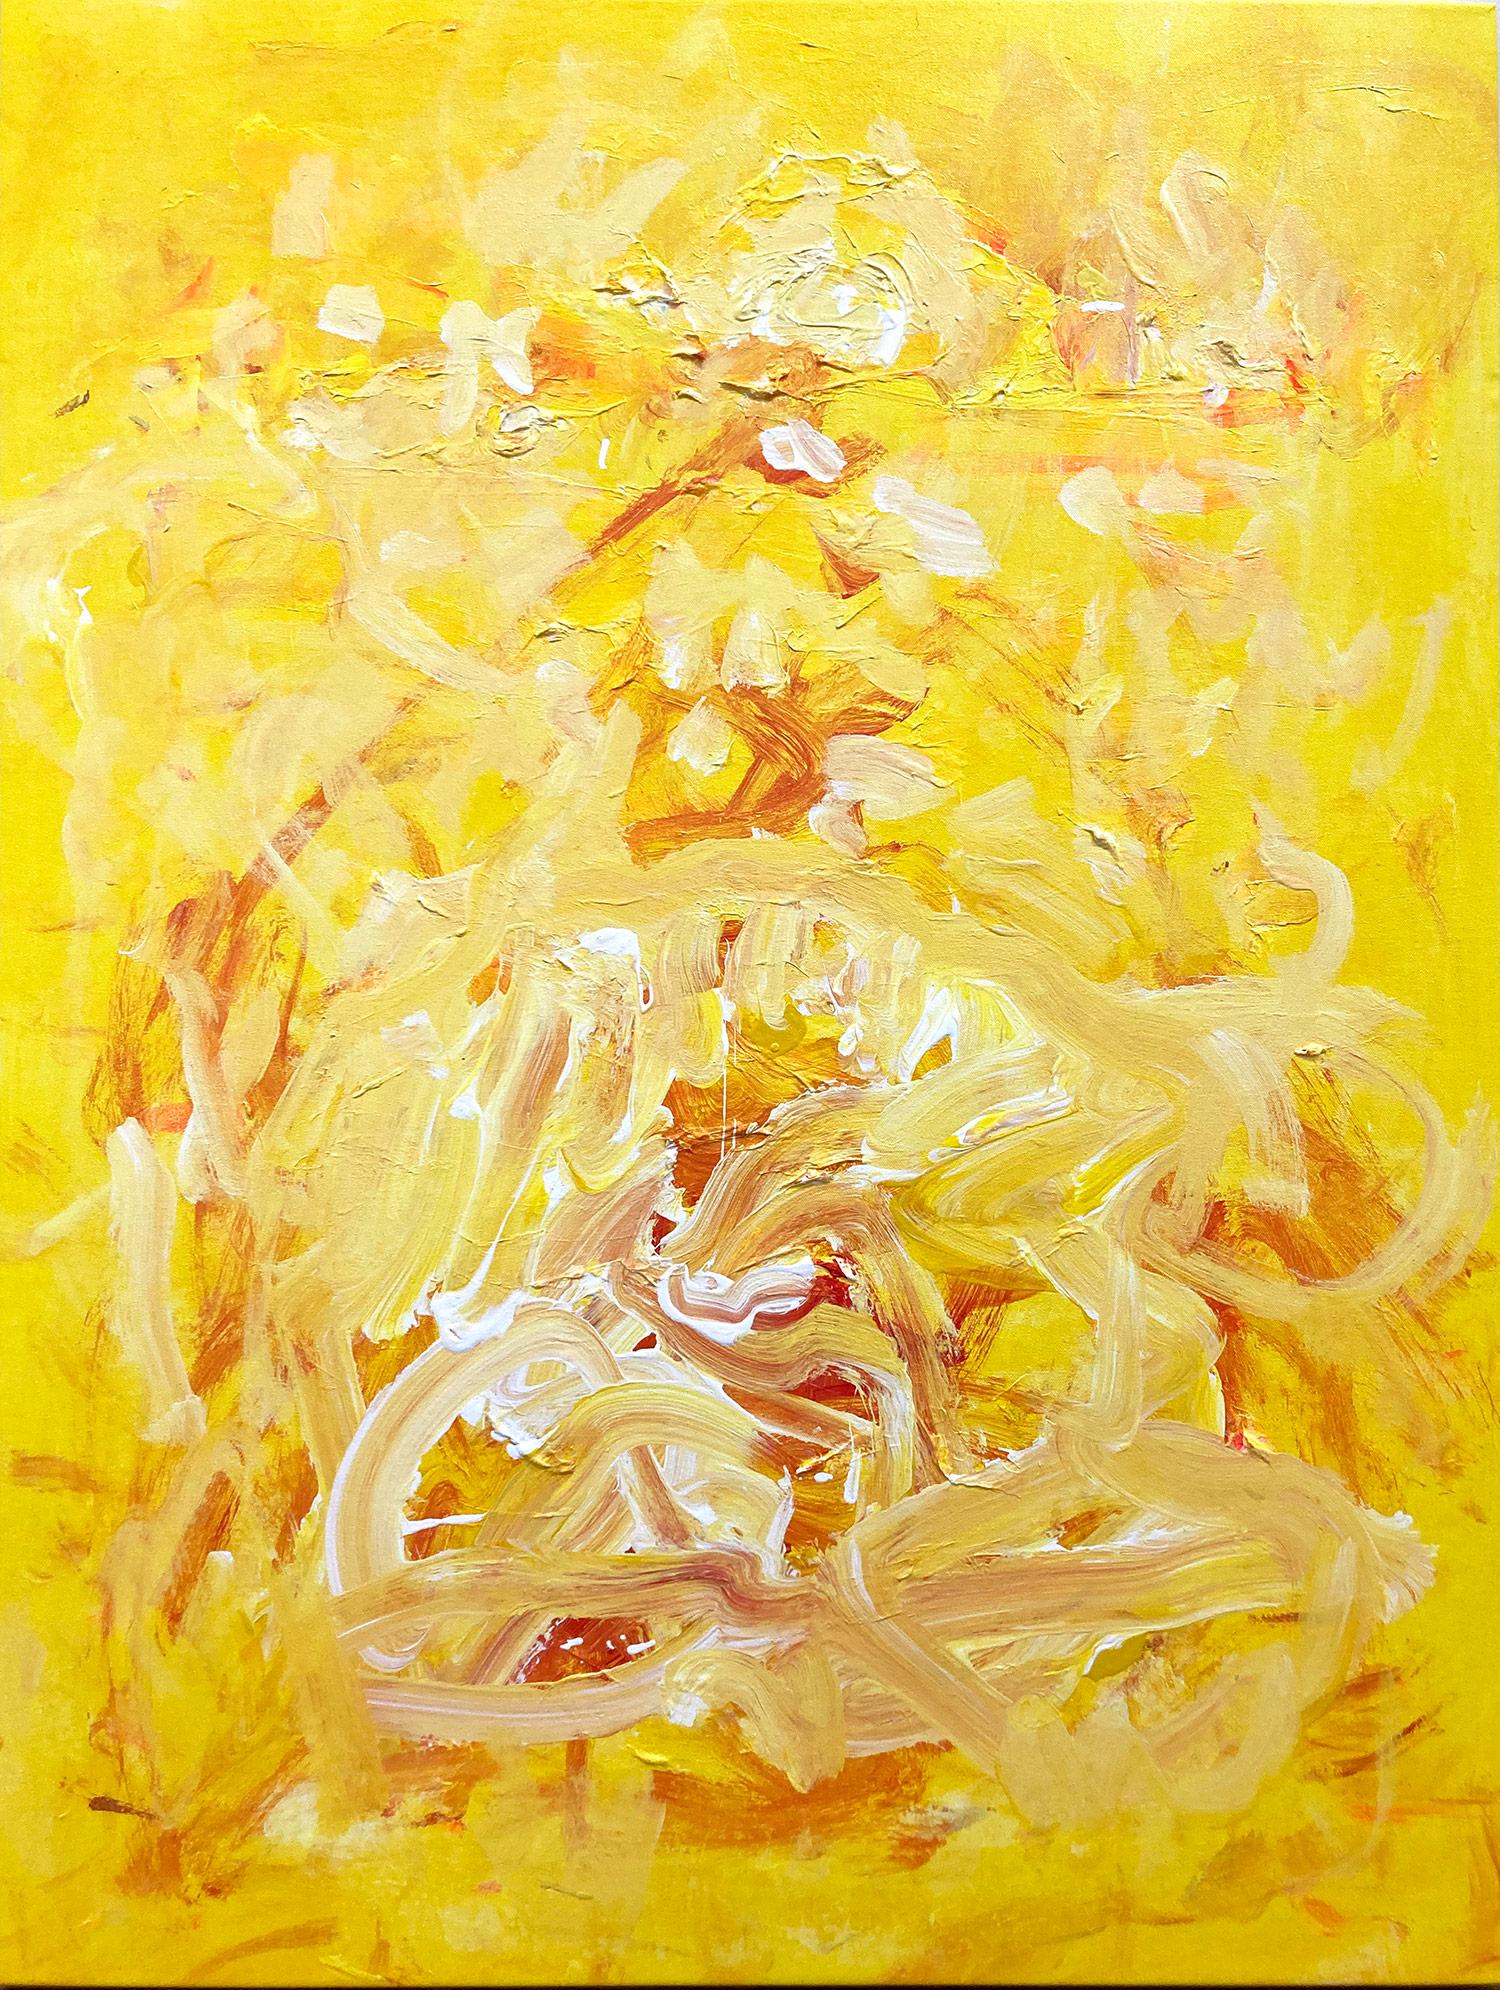 Abstract Painting Robert Gregory Phillips - "Nativity In Yellow" - Peinture acrylique abstraite contemporaine de qualité supérieure sur toile